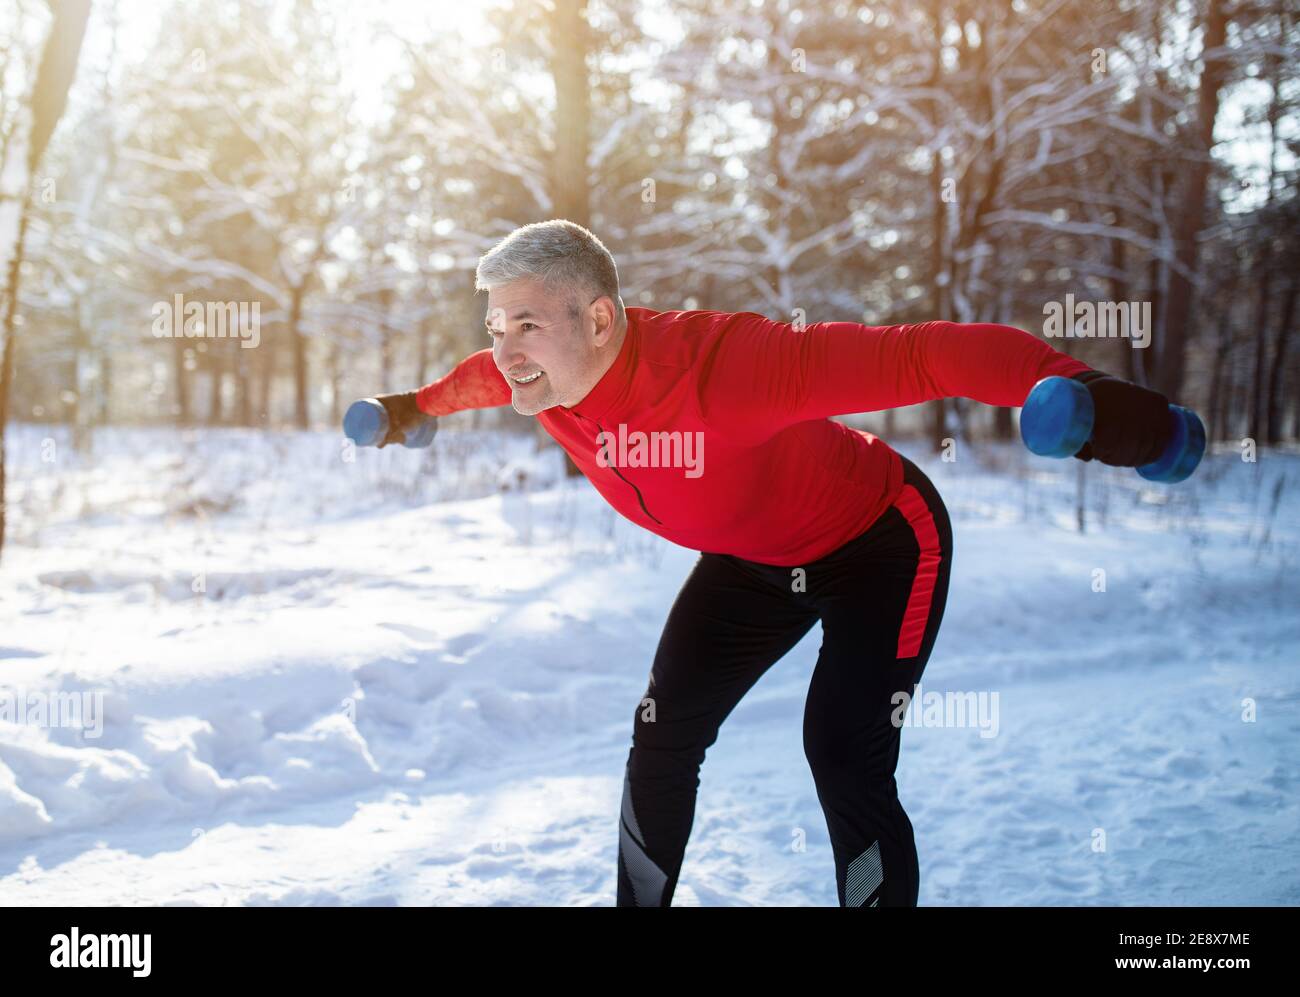 Entraînement de musculation en plein air en hiver. Sportif senior positif avec haltères effectuant des exercices de soulèvement dans un parc enneigé Banque D'Images